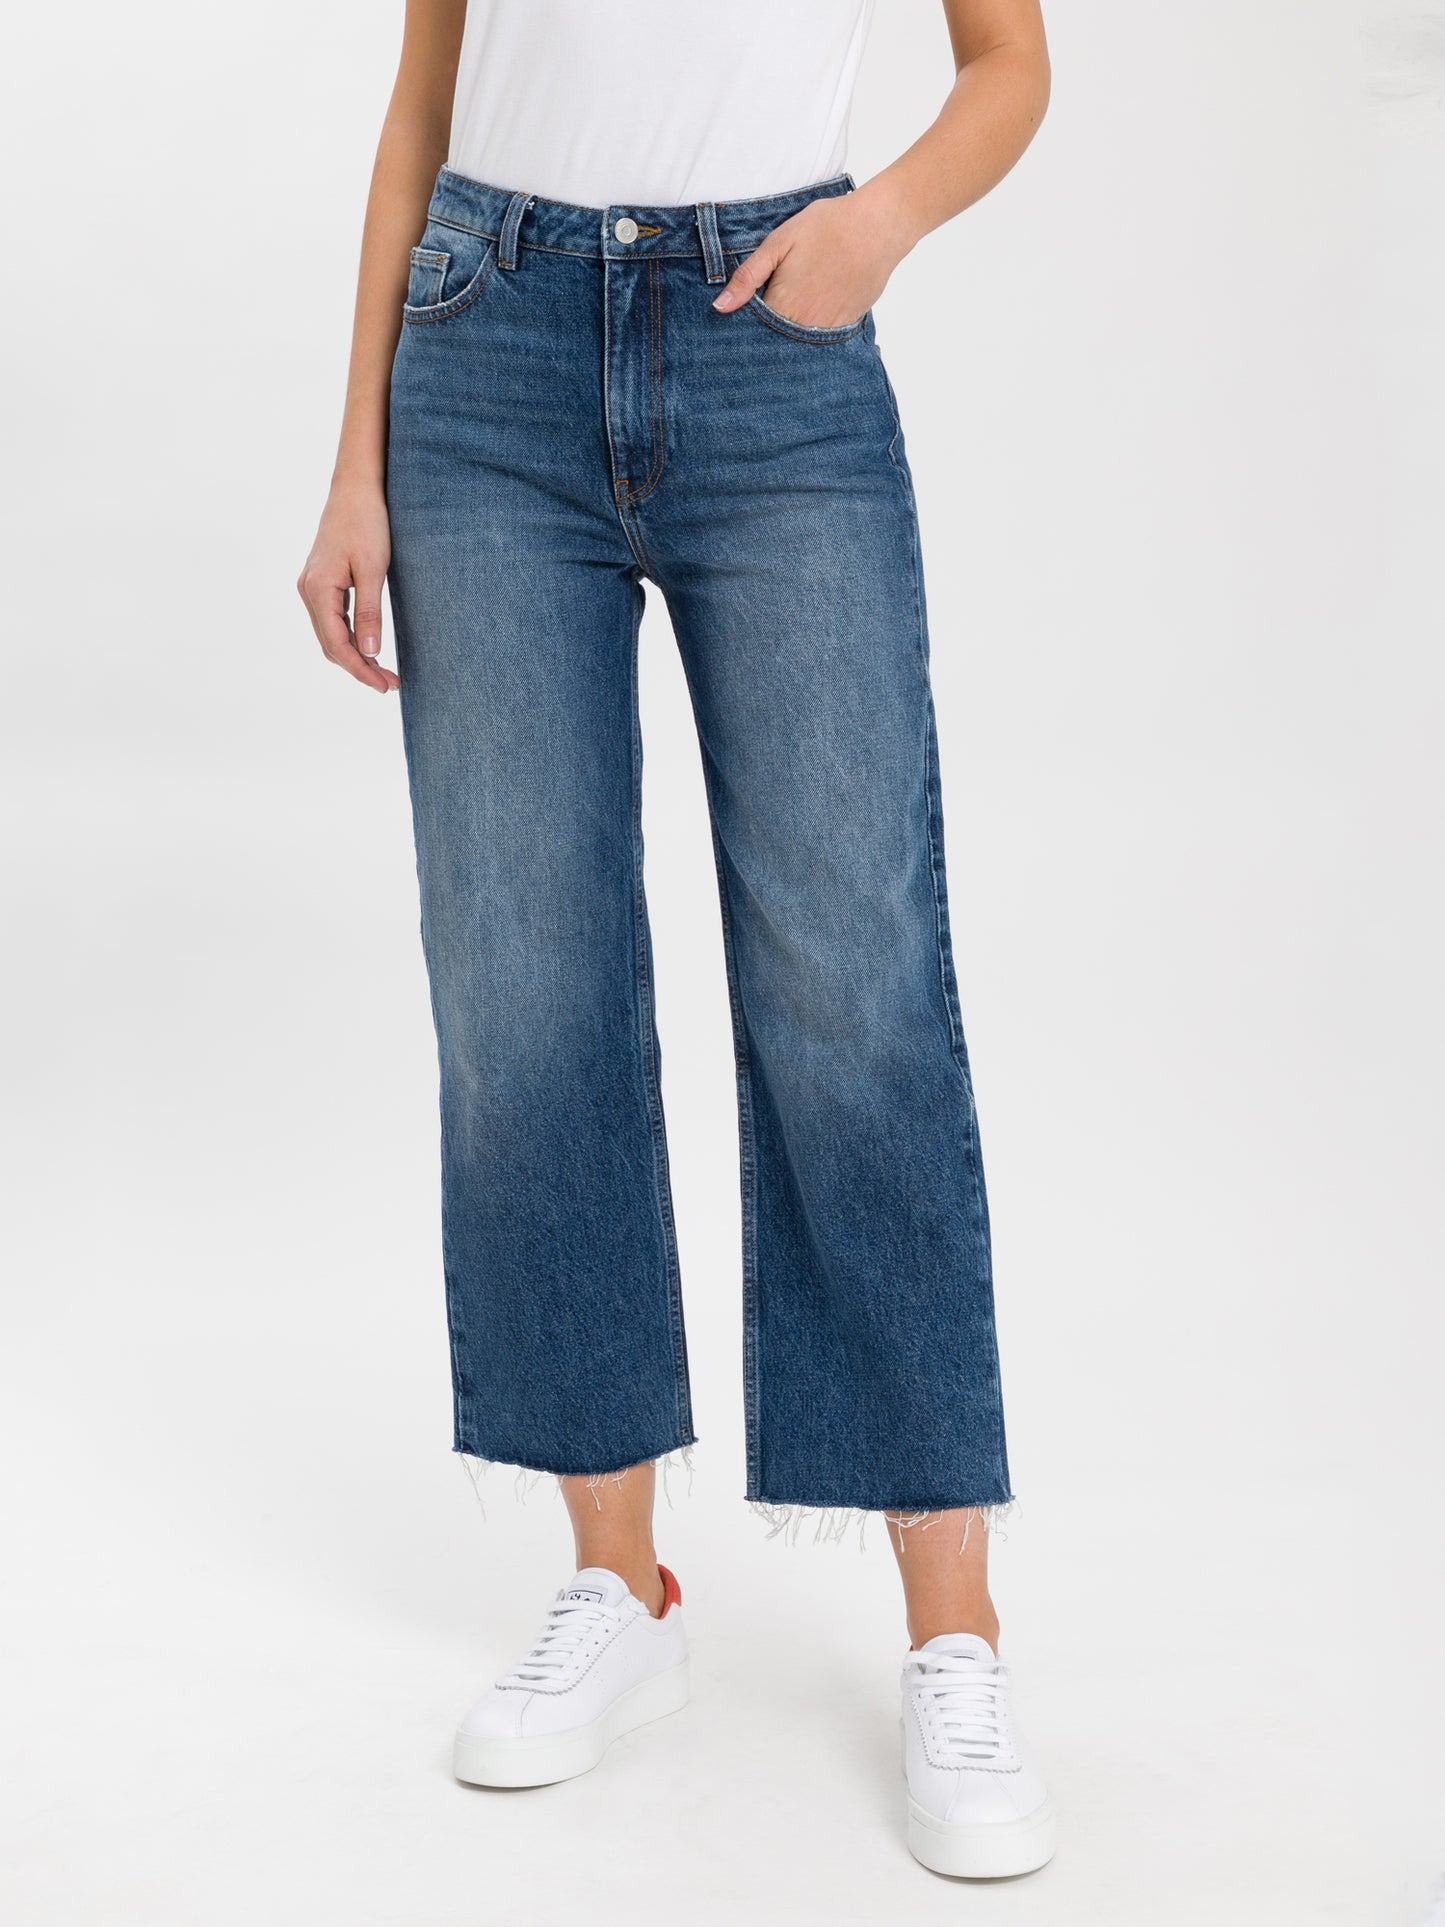 Women's jeans high waist cropped wide leg medium blue